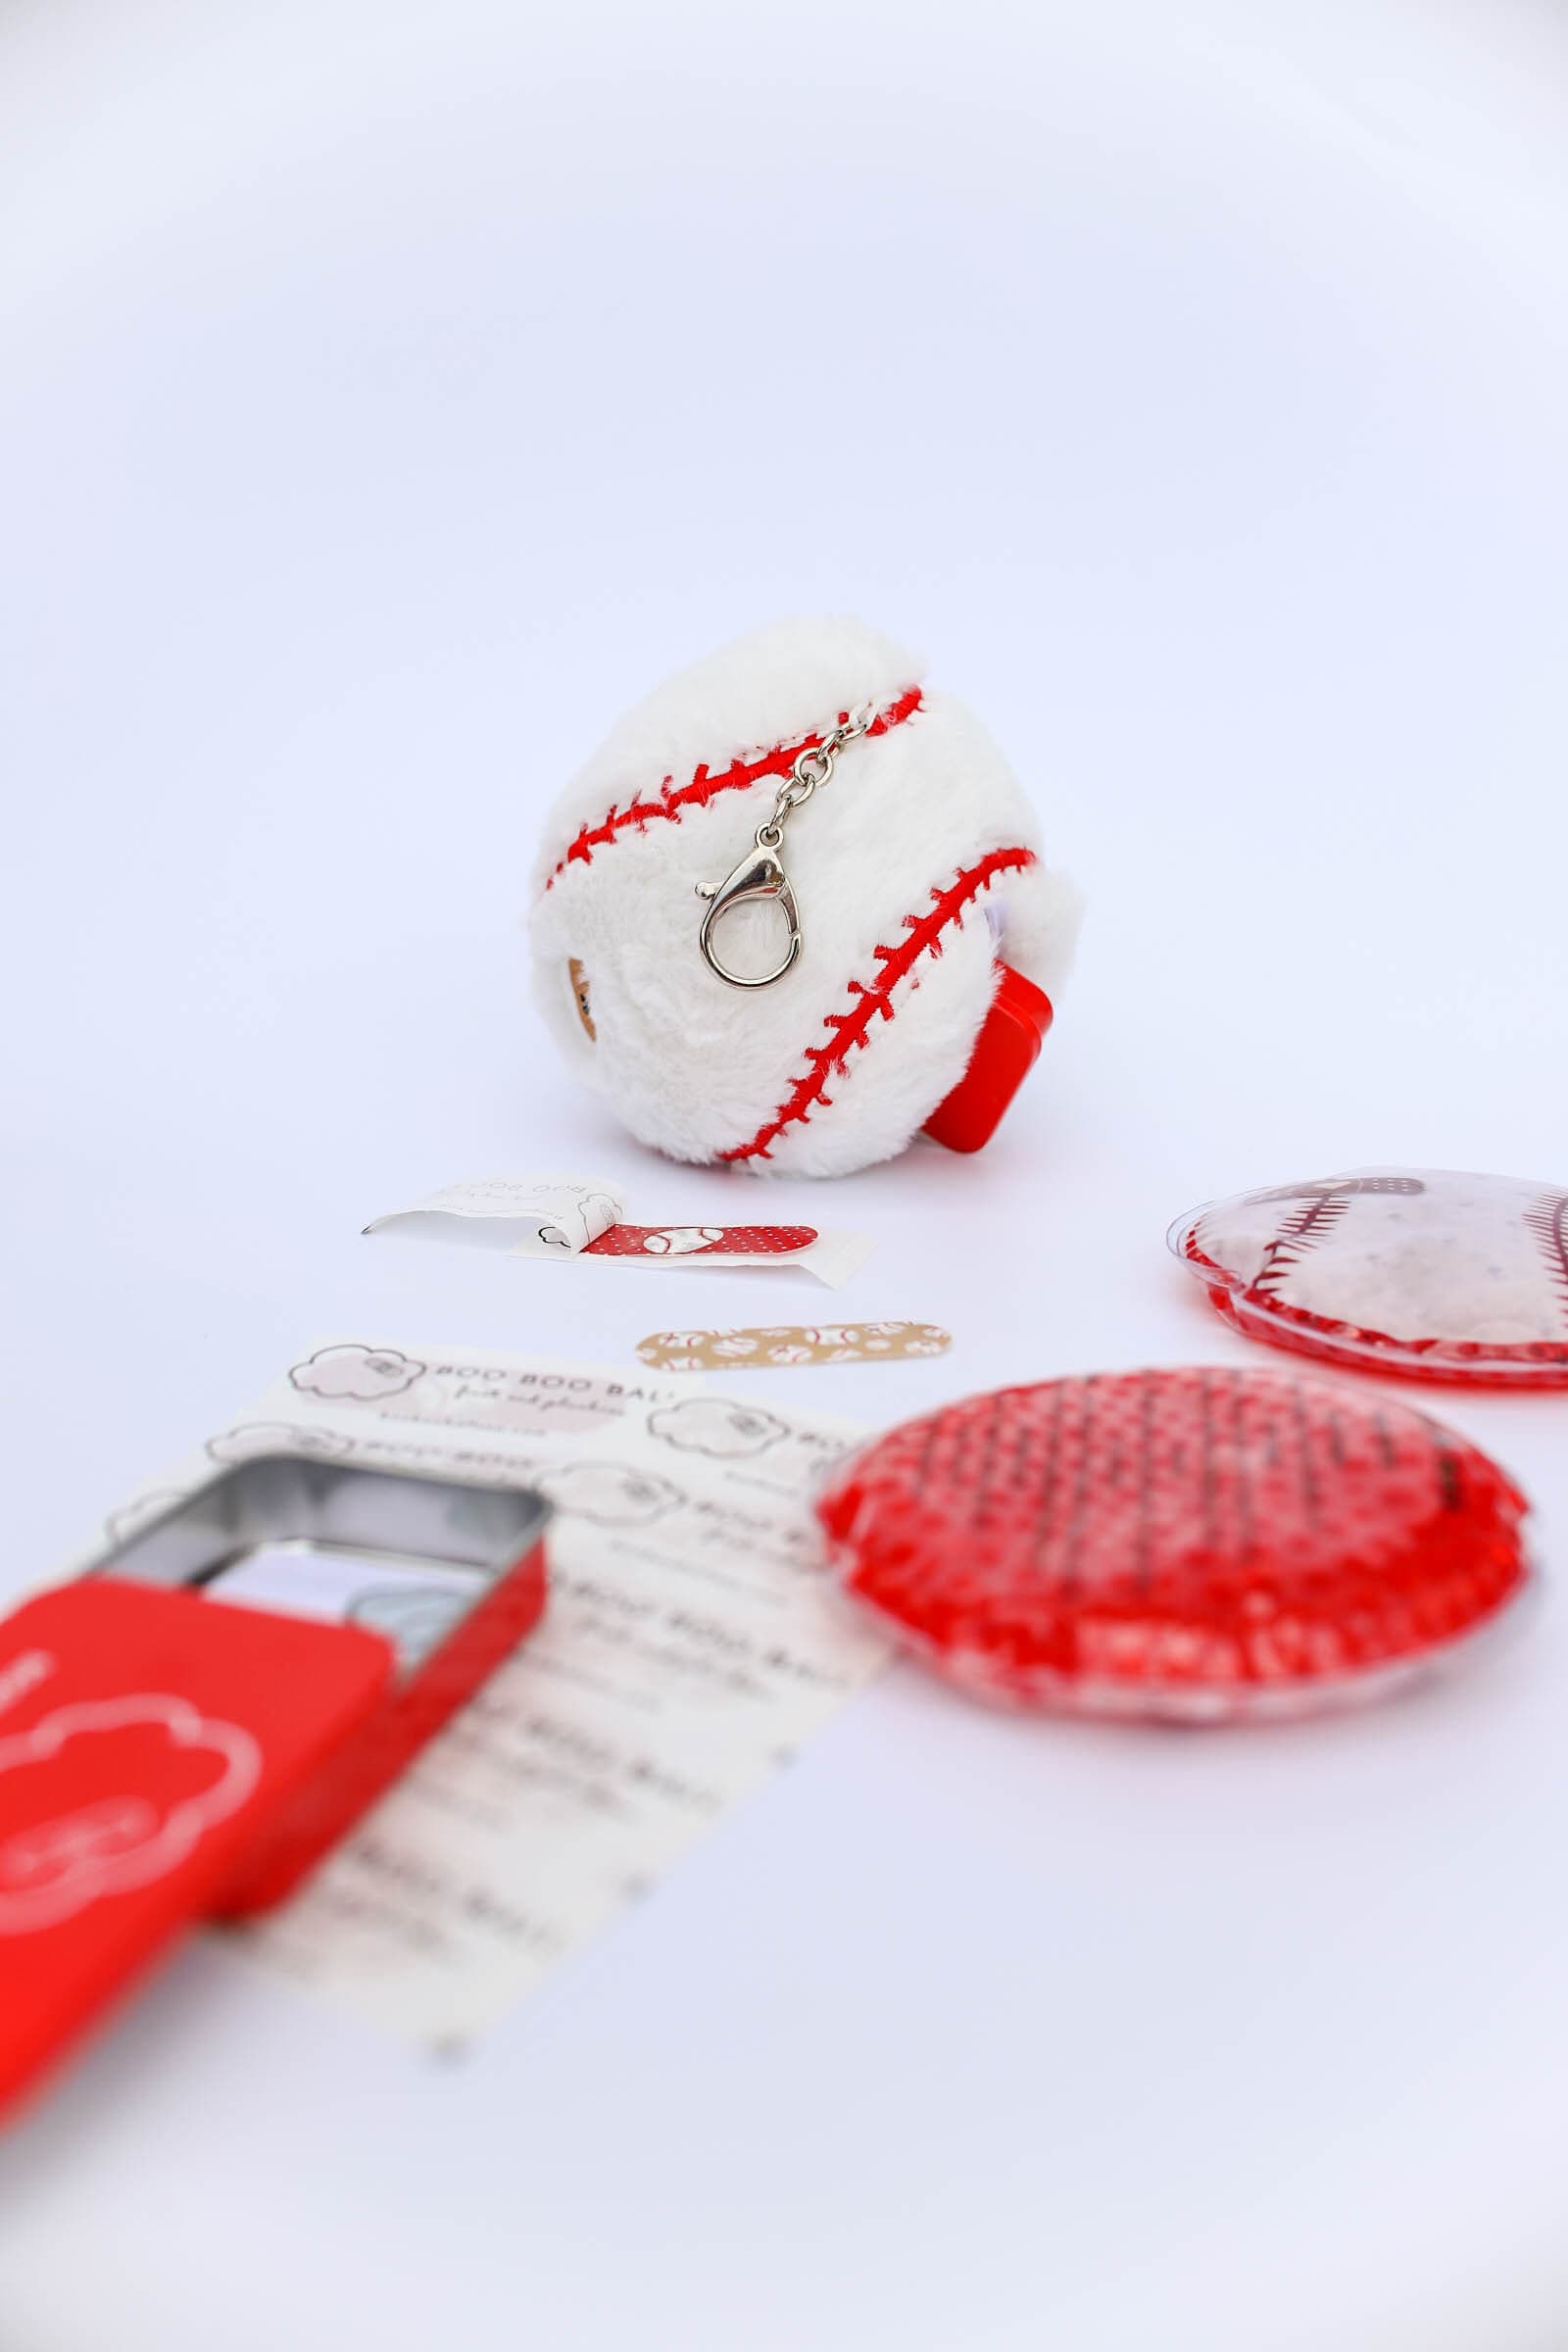 Cheer Pom Pom Keychain - Cute First Aid Kit Keychain